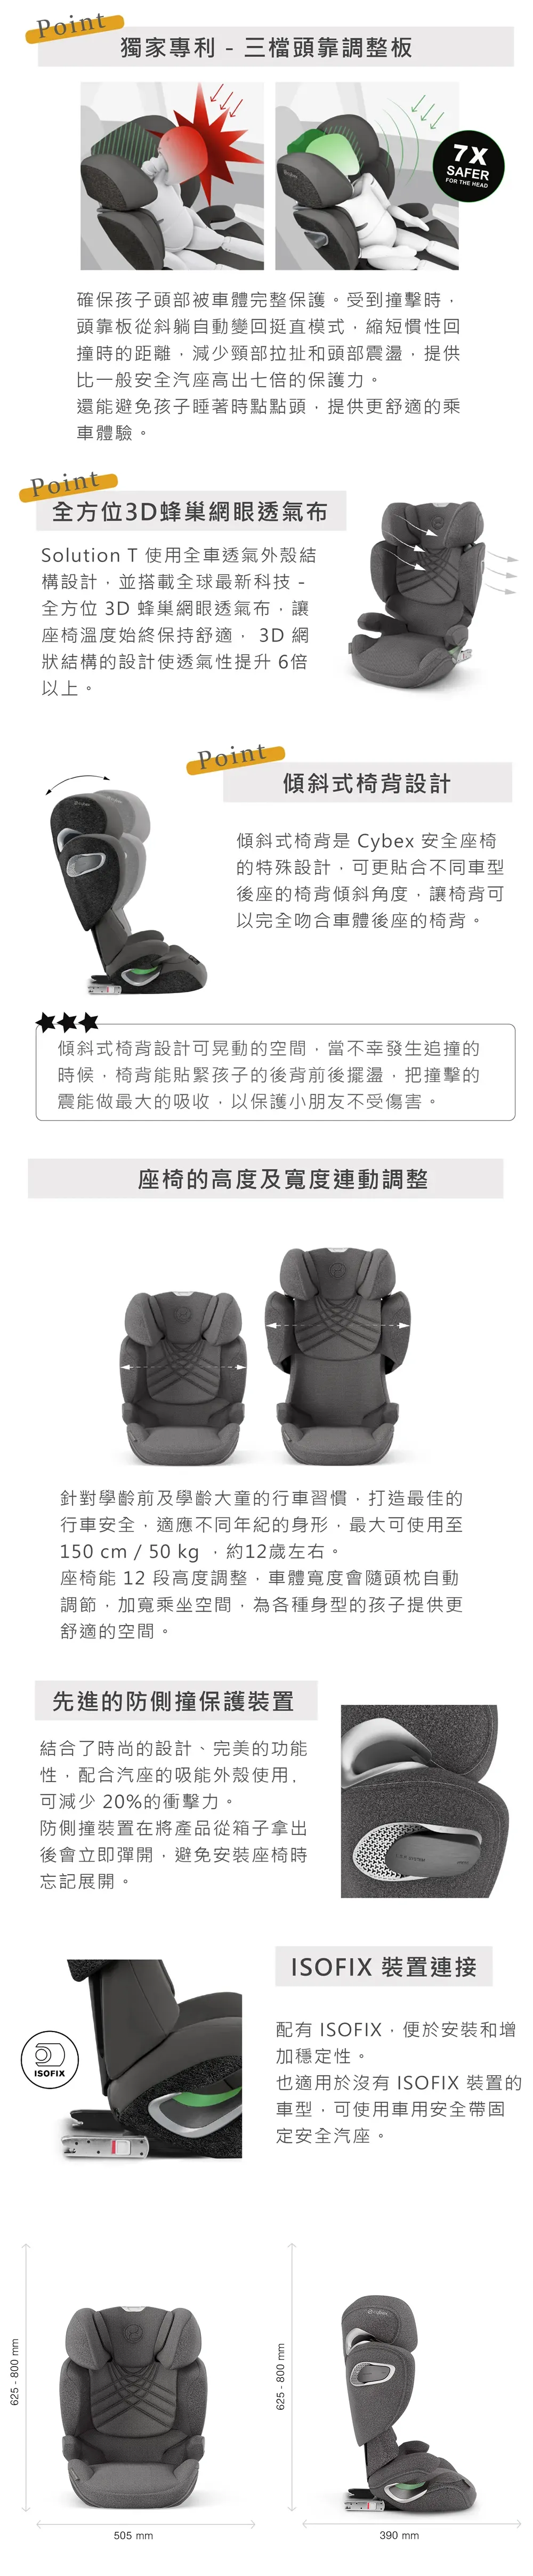 Cybex Solution T i-Fix 兒童汽車安全座椅